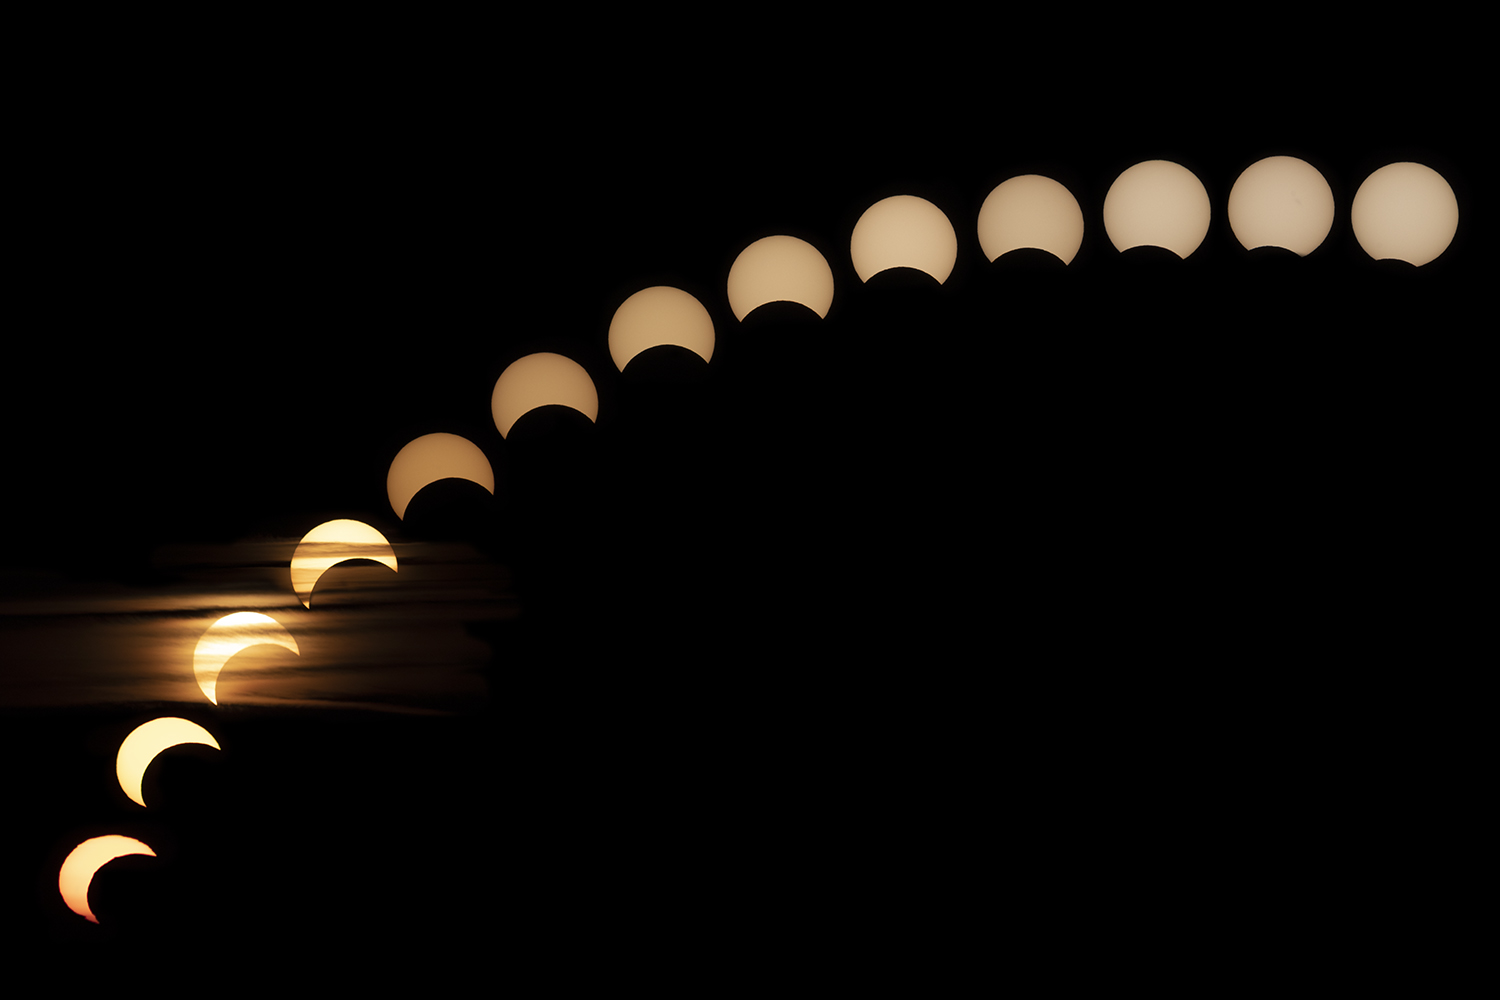 Annular solar eclipse 26 Dec. 2019.